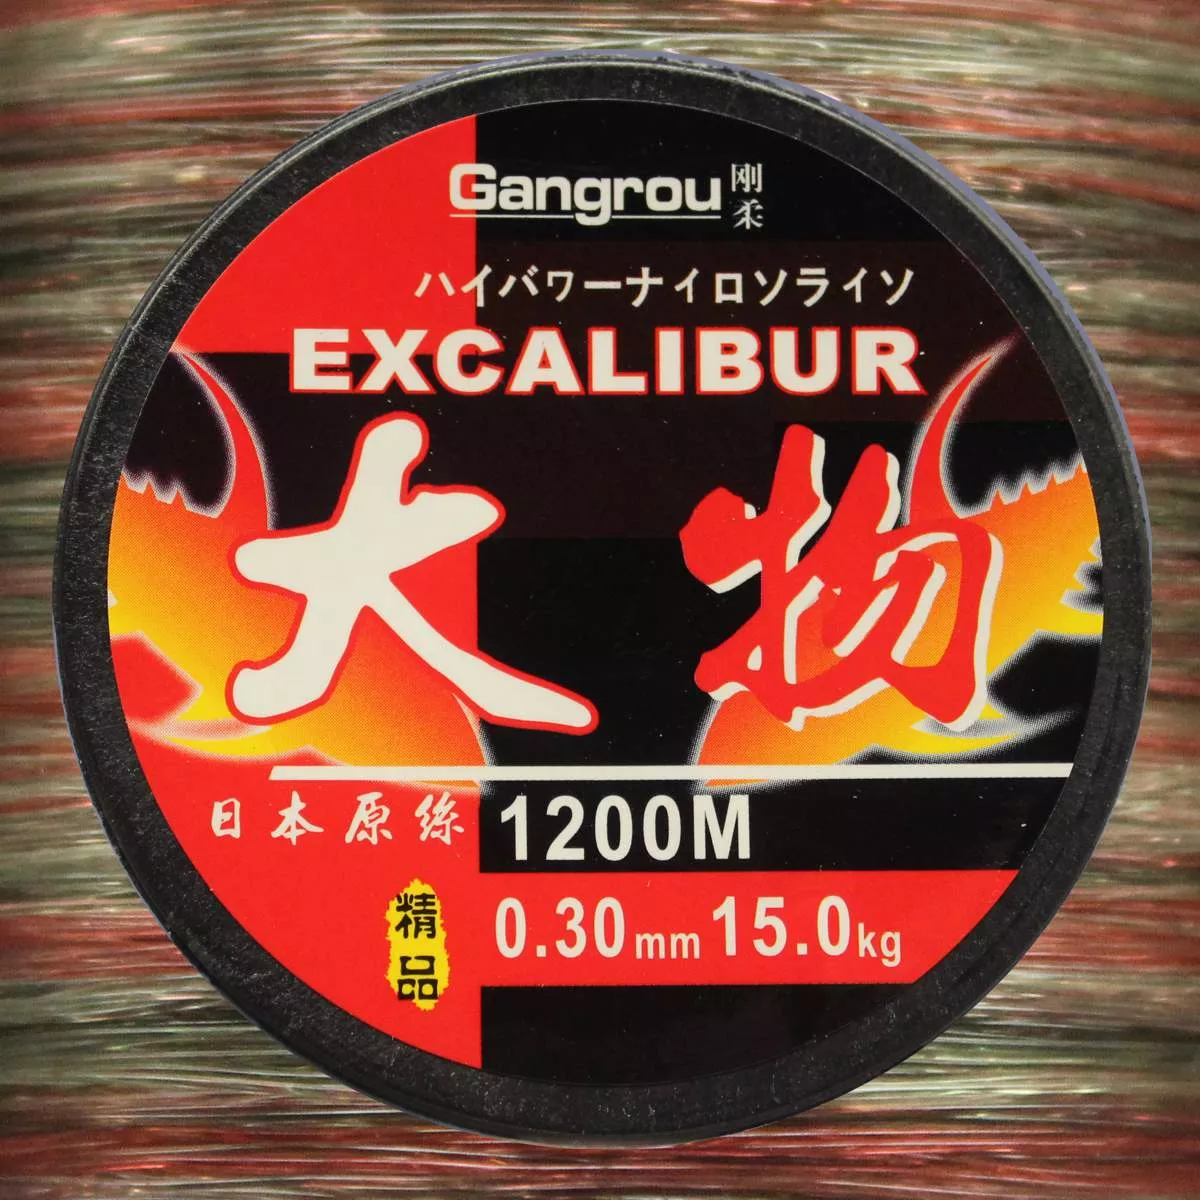 EFT Gangrou Excalibur Camou, monofile Angelschnur, mono line